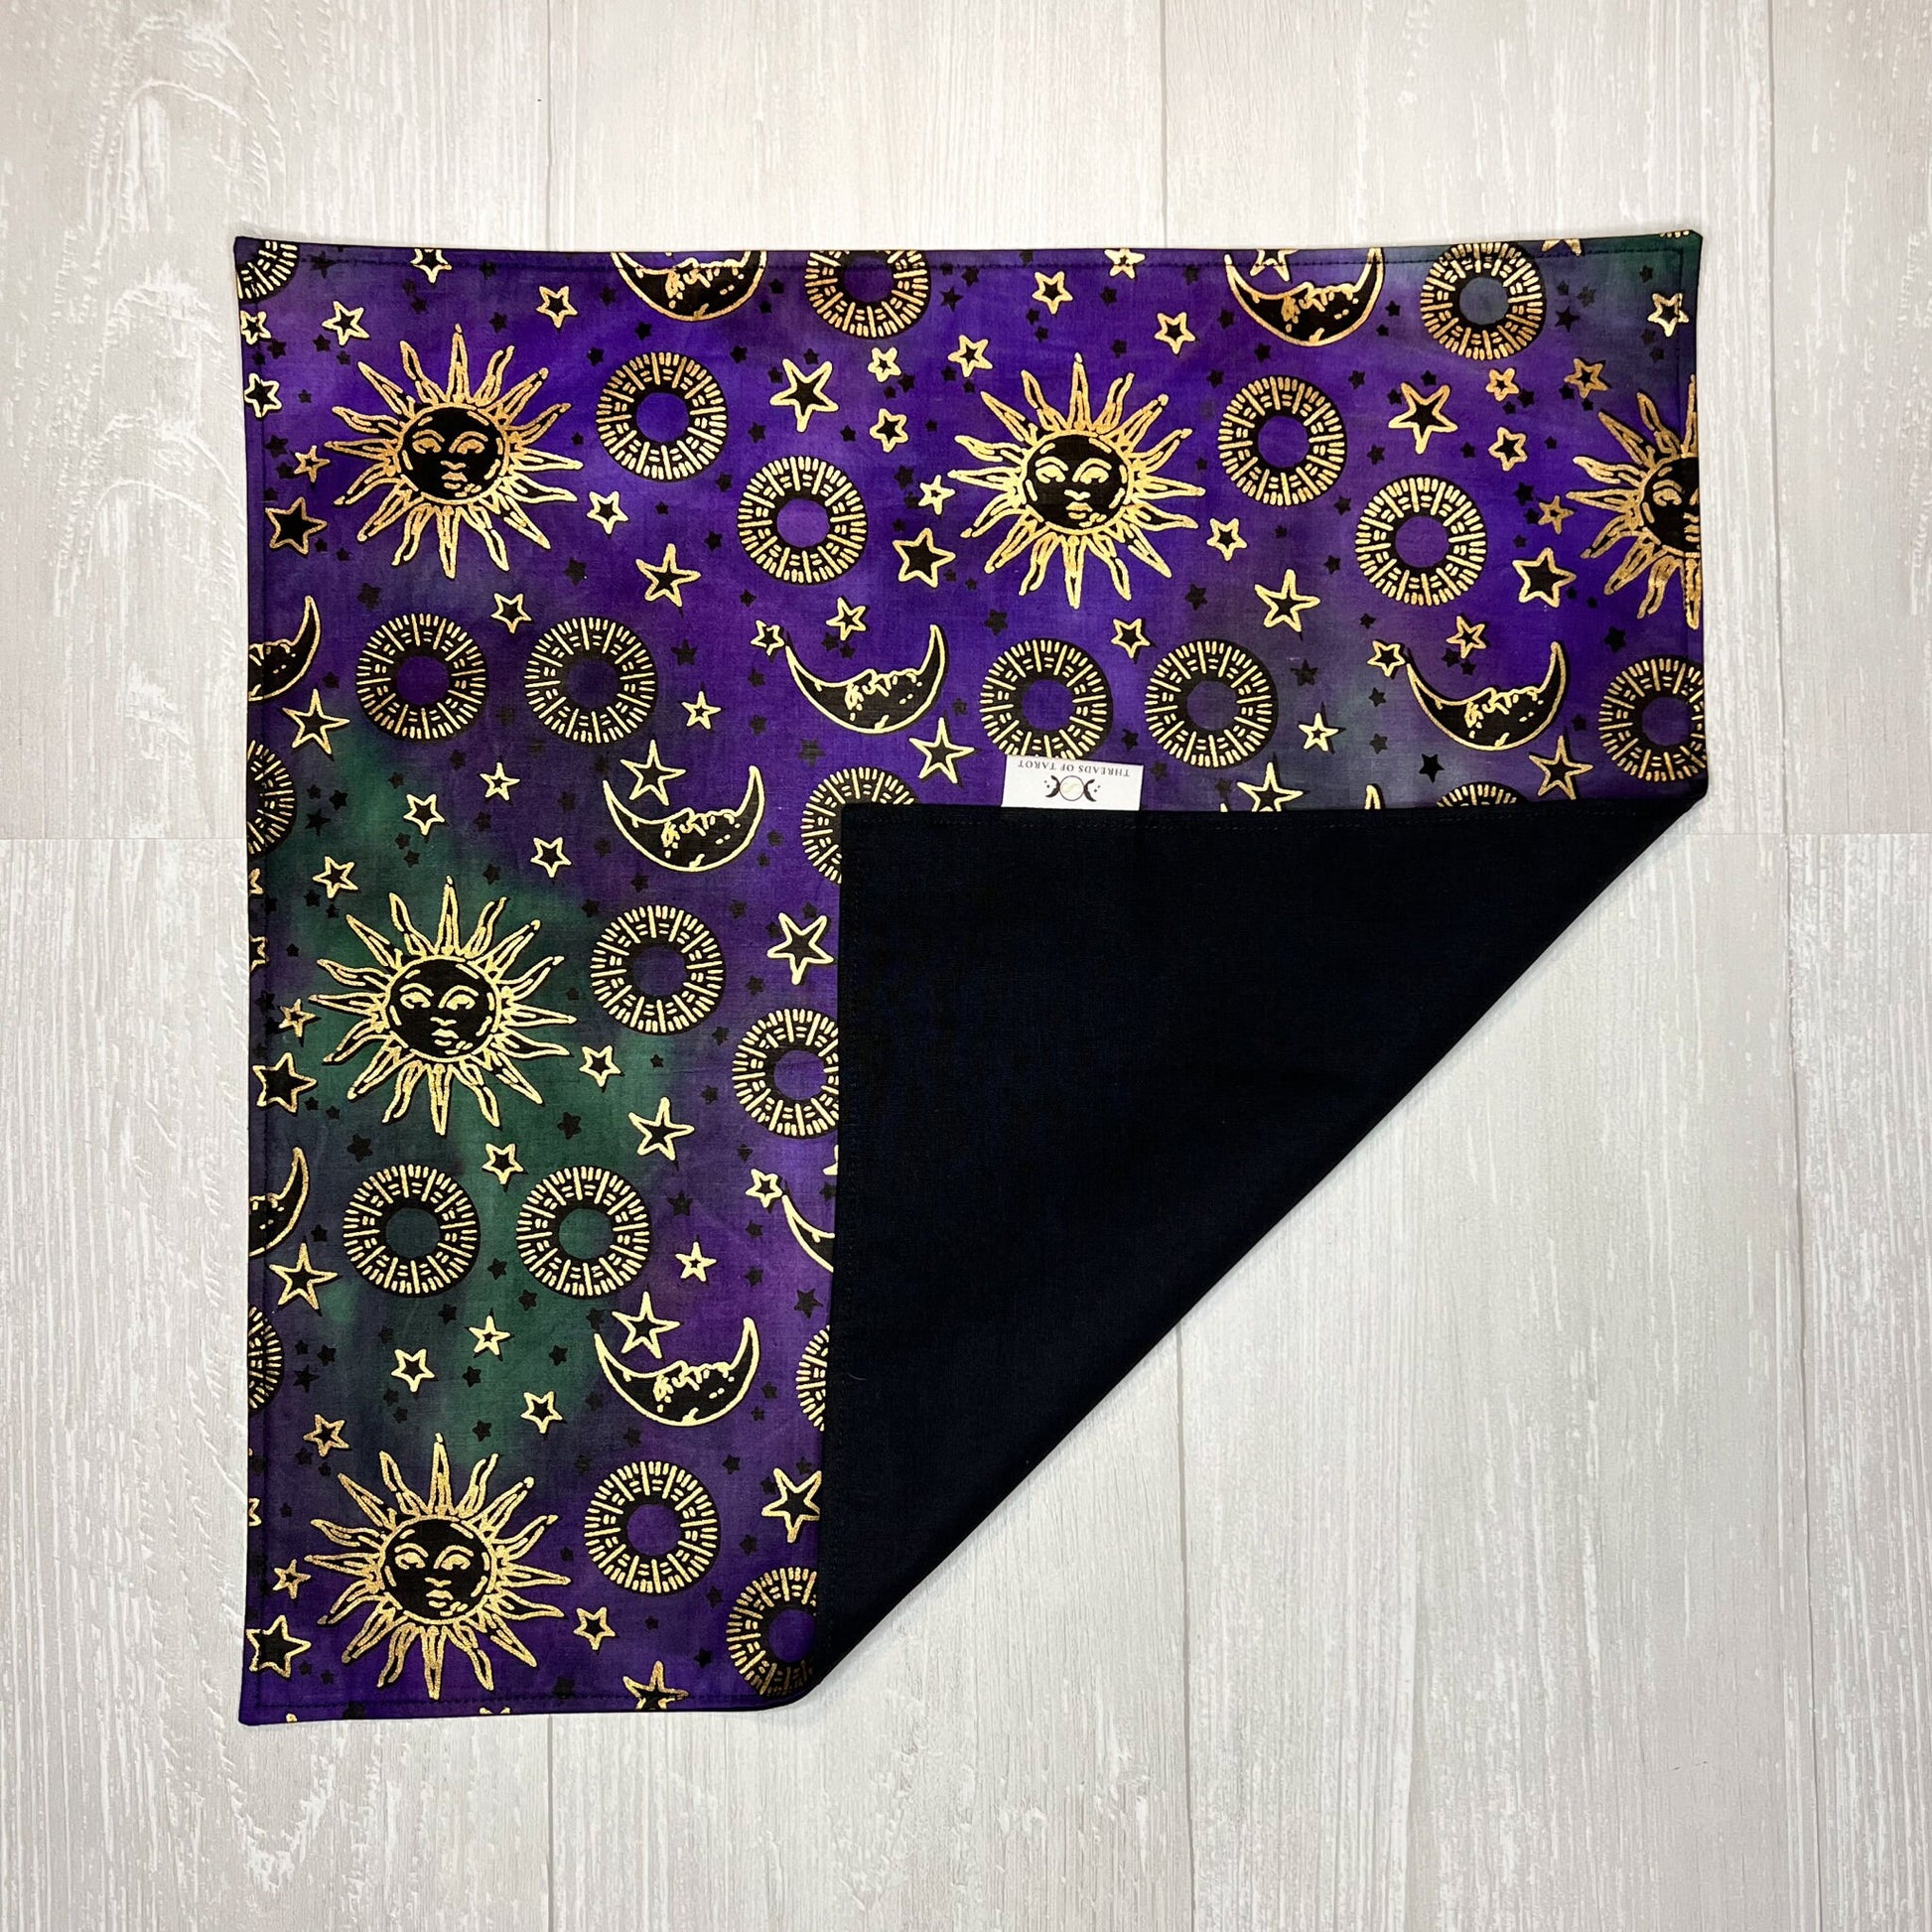 Sun and Moon Tarot Altar Cloth - 16"x16"